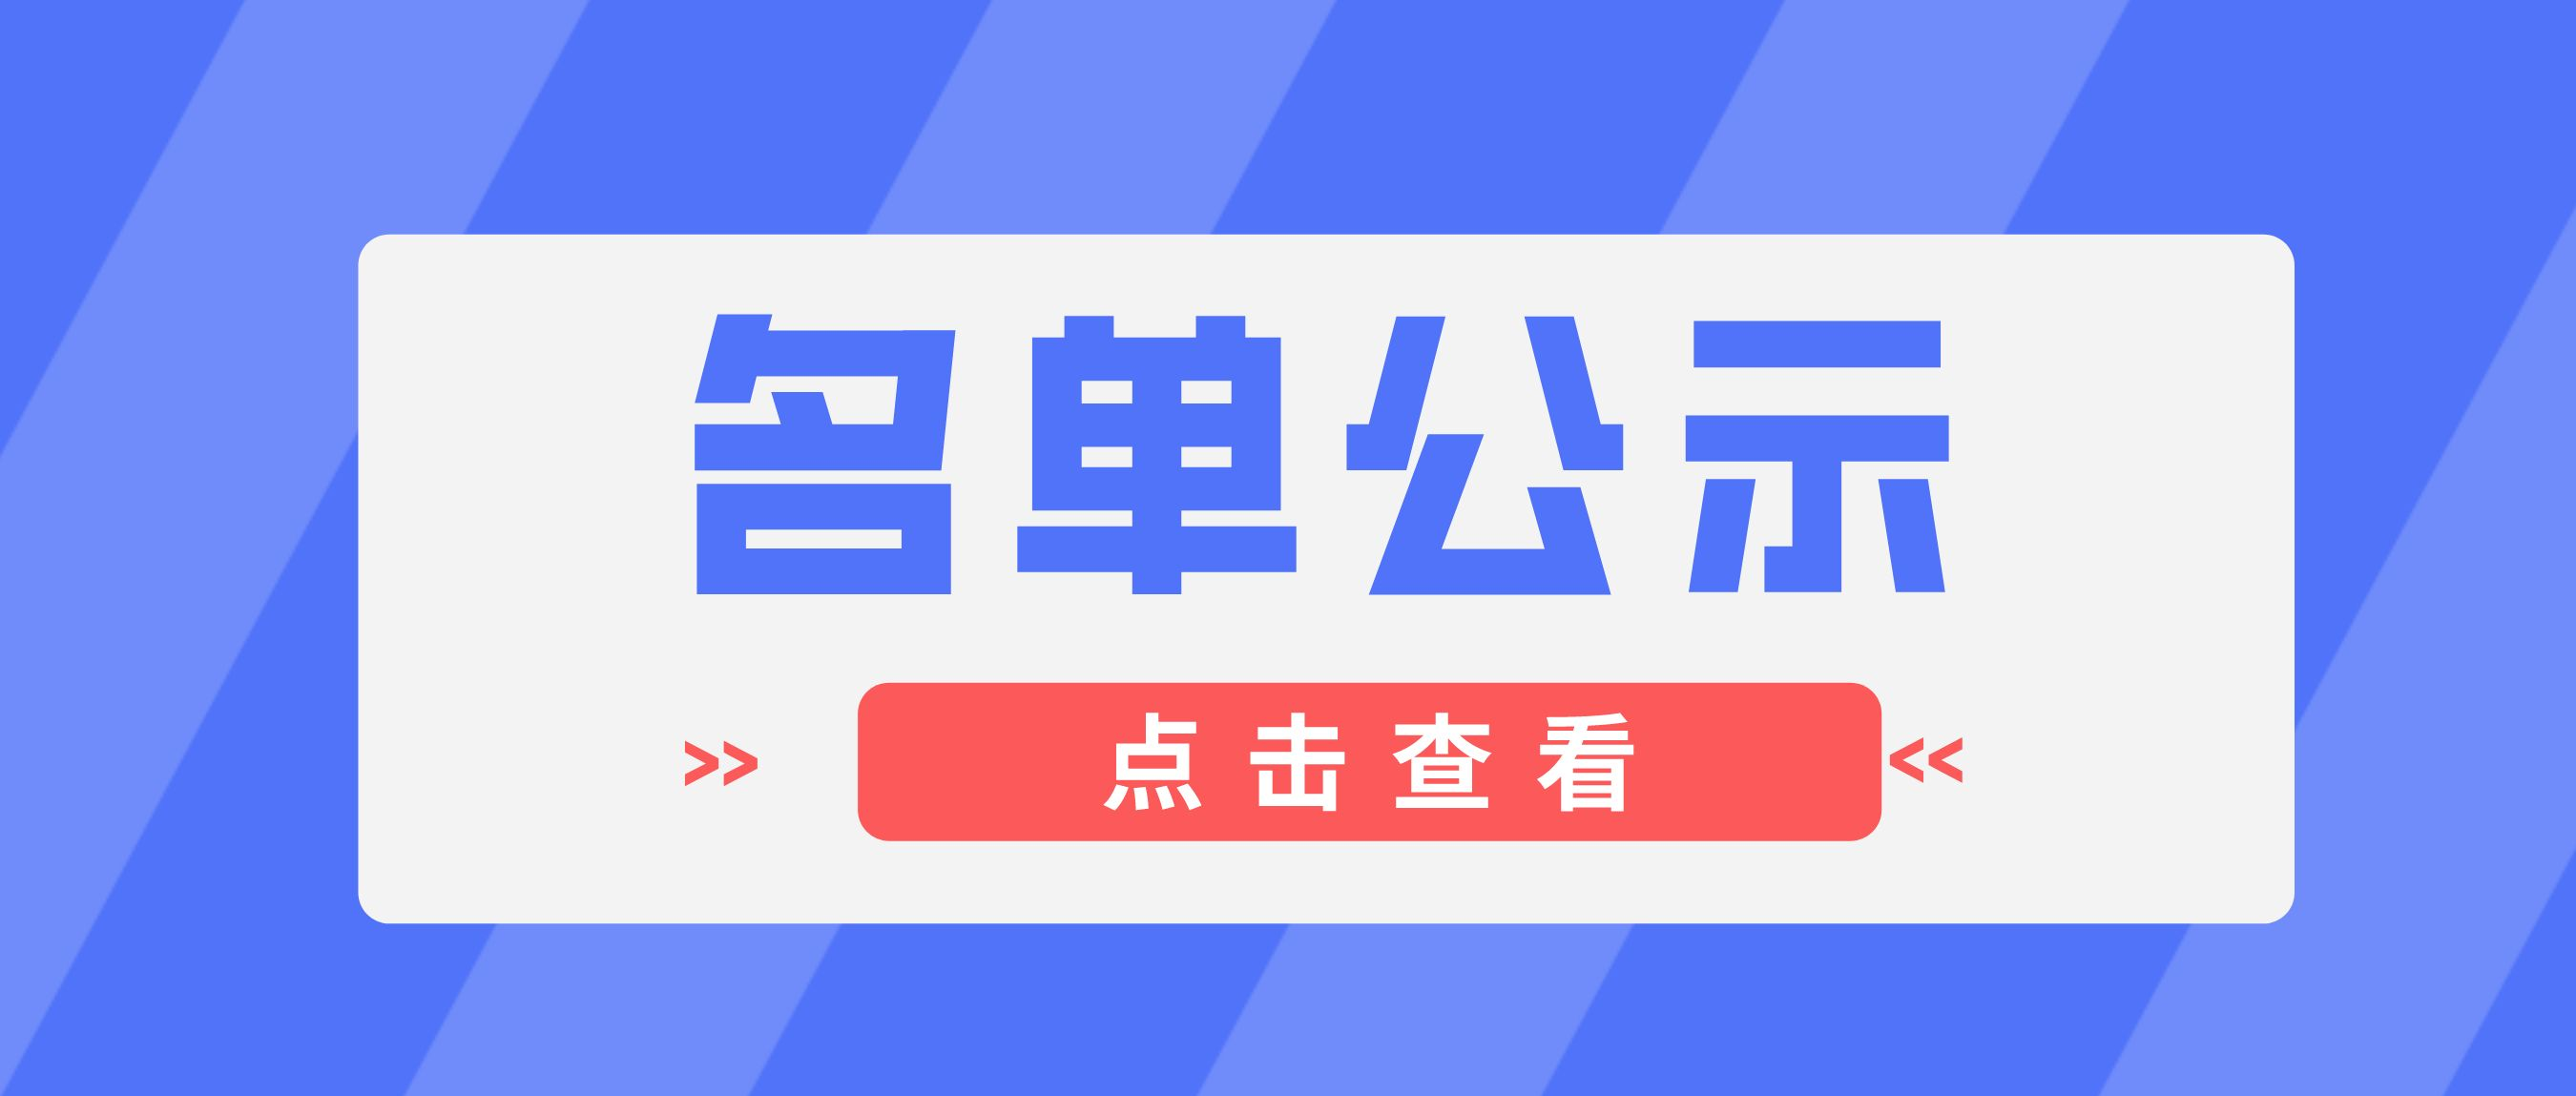 广州市志愿者协会第五届理事会、监事会候选人名单公示